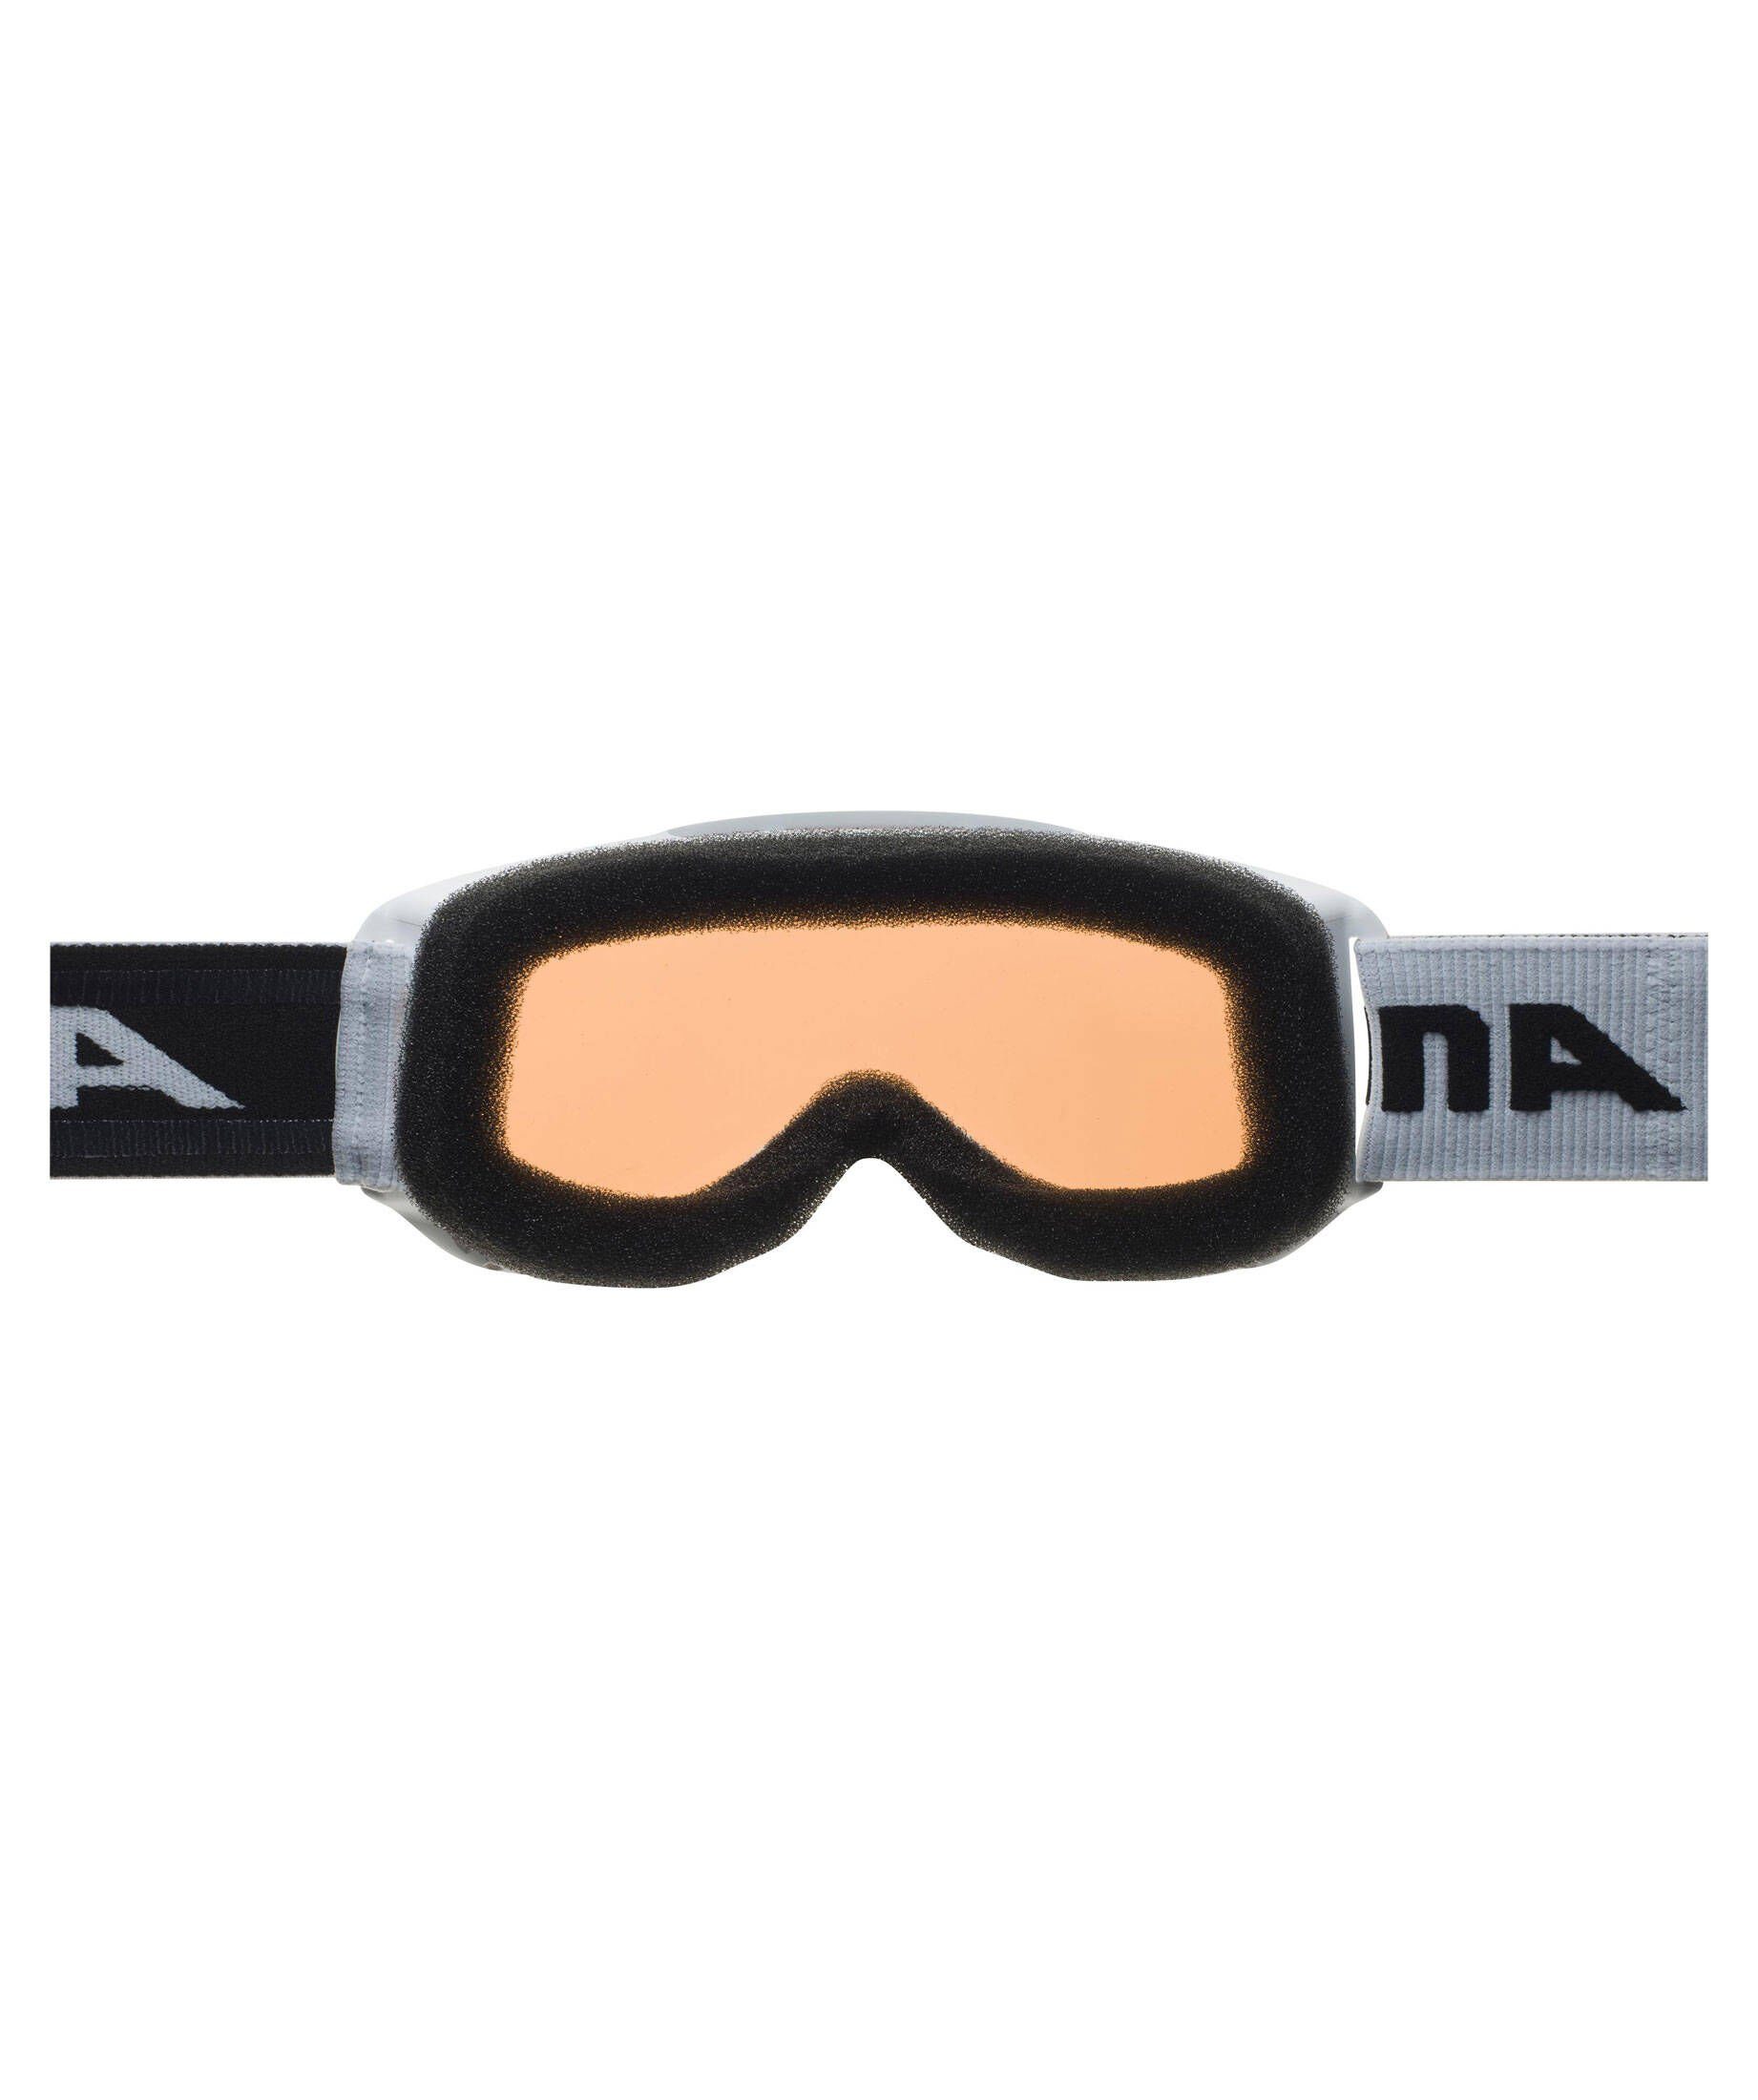 "Piney" Skibrille Skibrille (100) Sports Alpina Kinder weiss